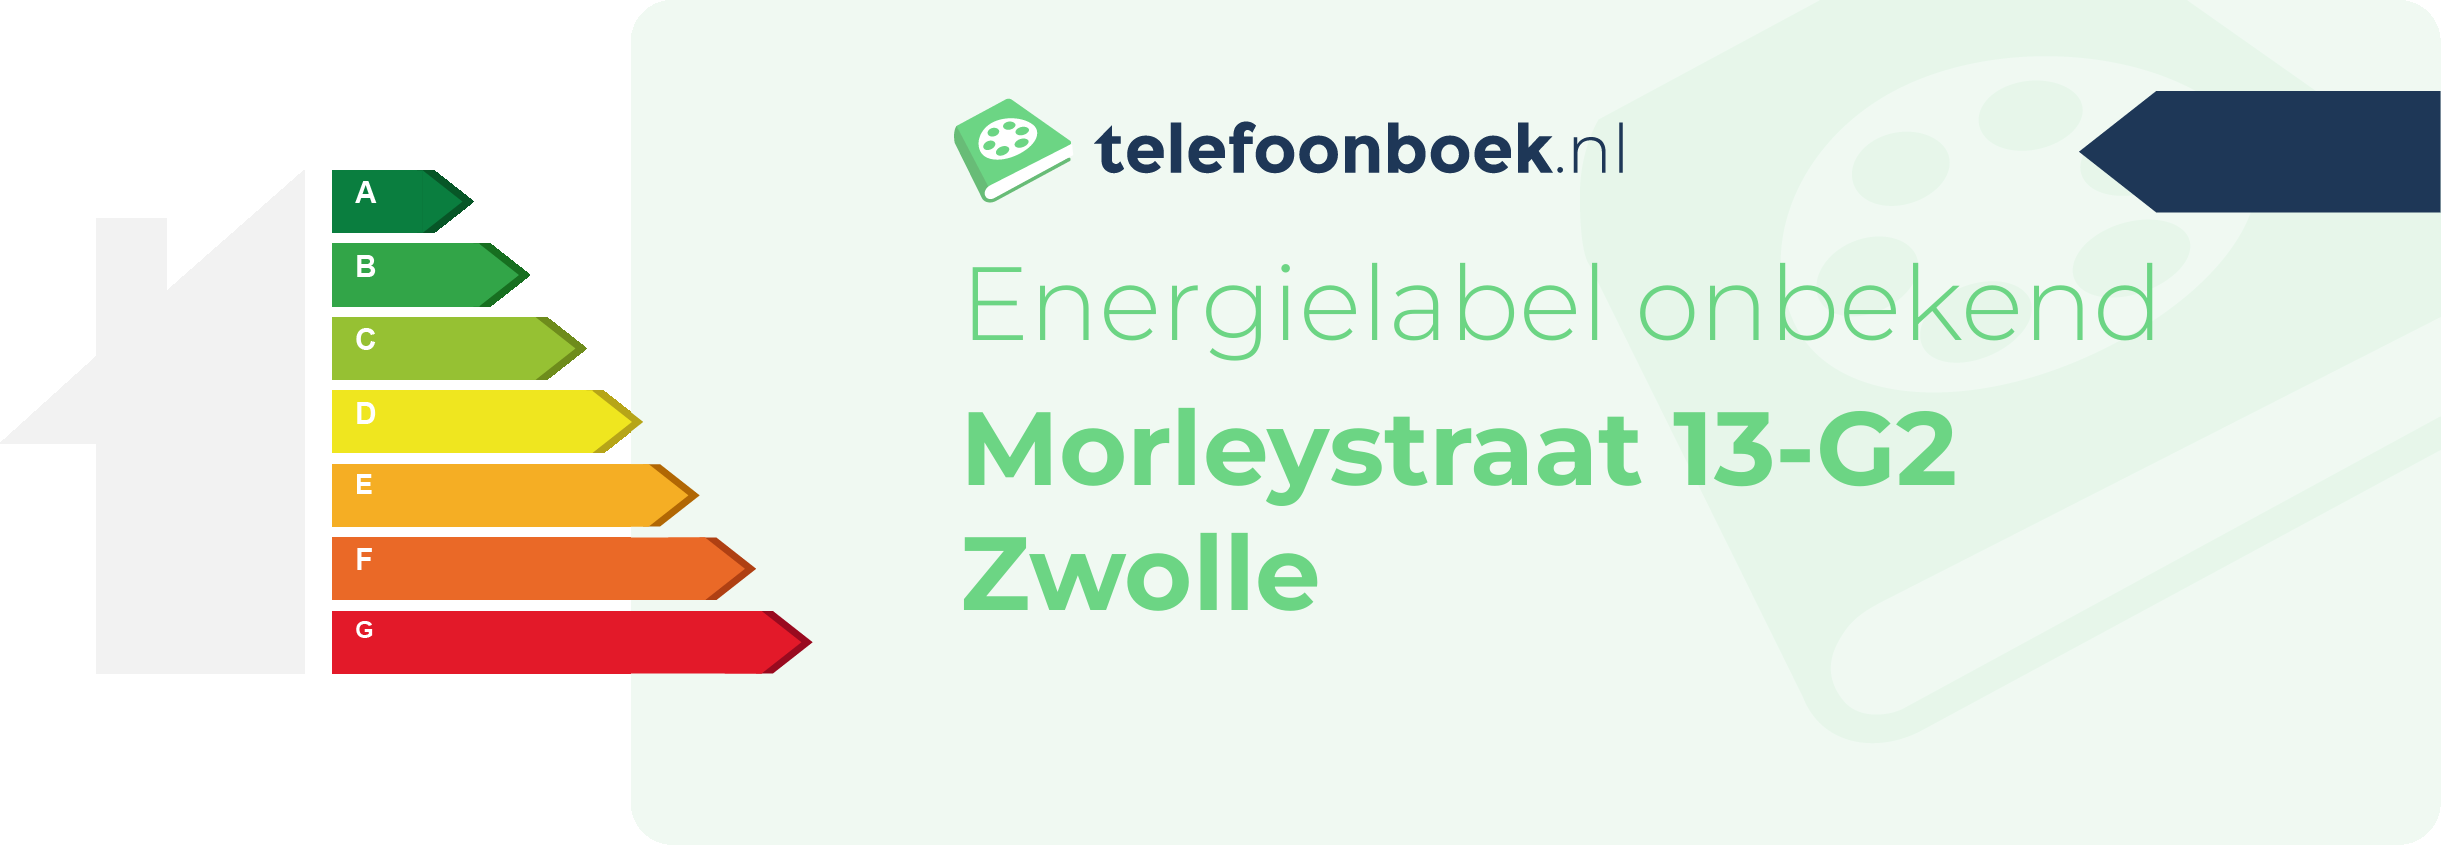 Energielabel Morleystraat 13-G2 Zwolle